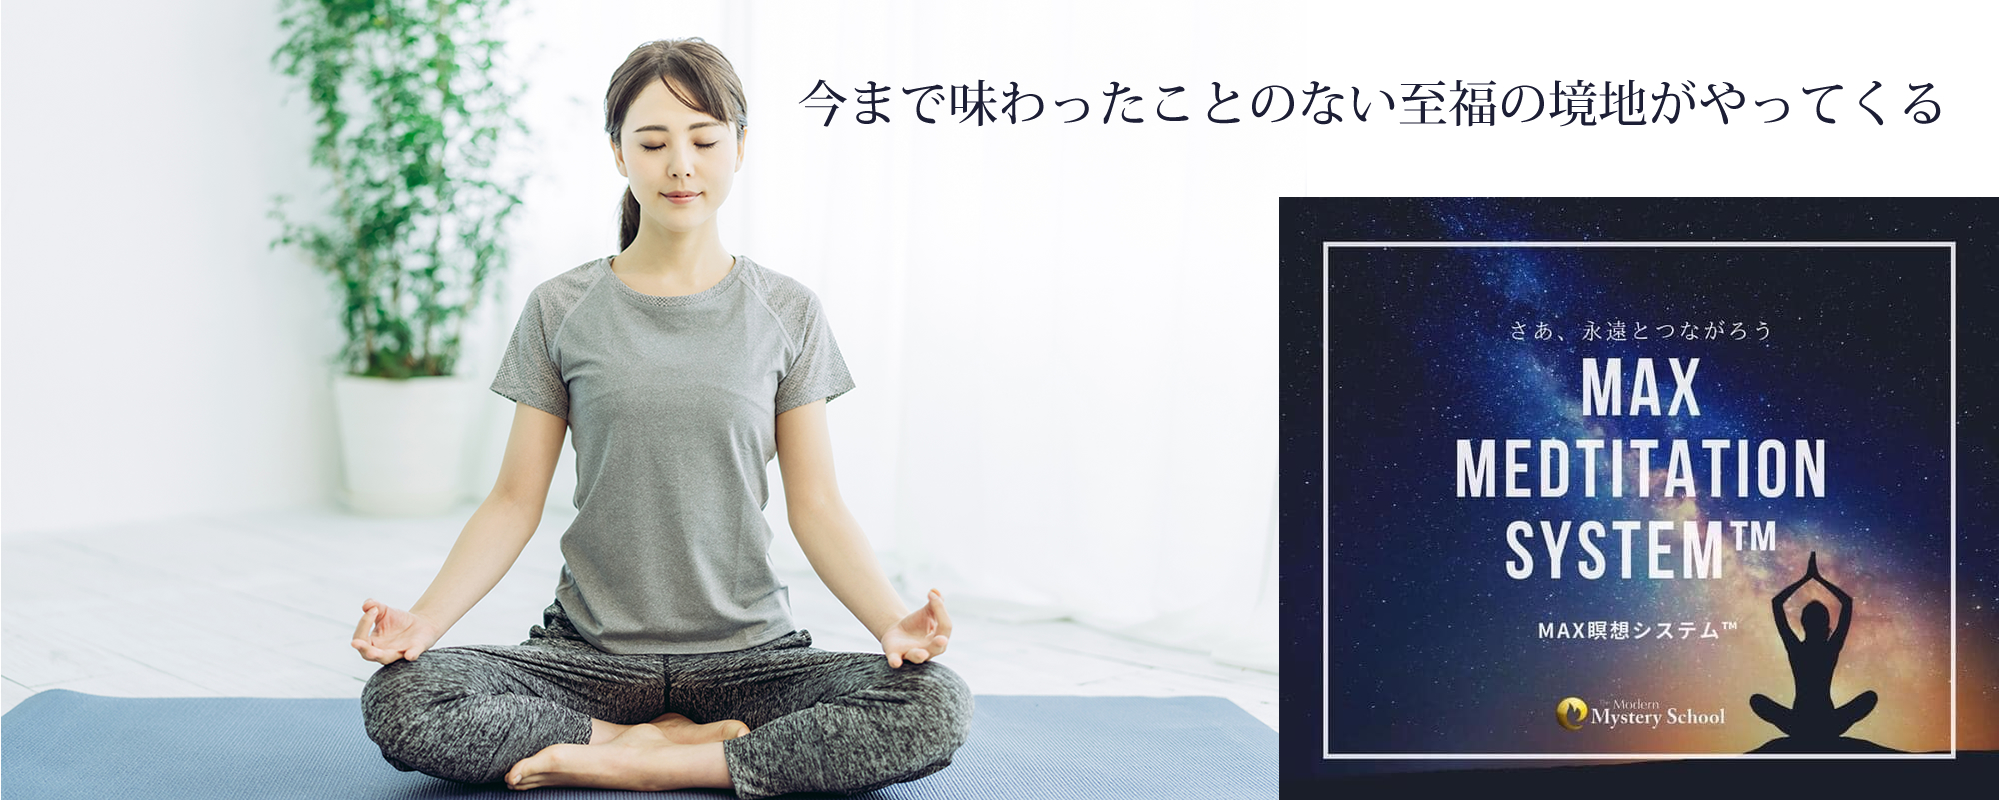 十人十色なヒーリングスペース「にじいろCREATION」MAX瞑想システム画像03